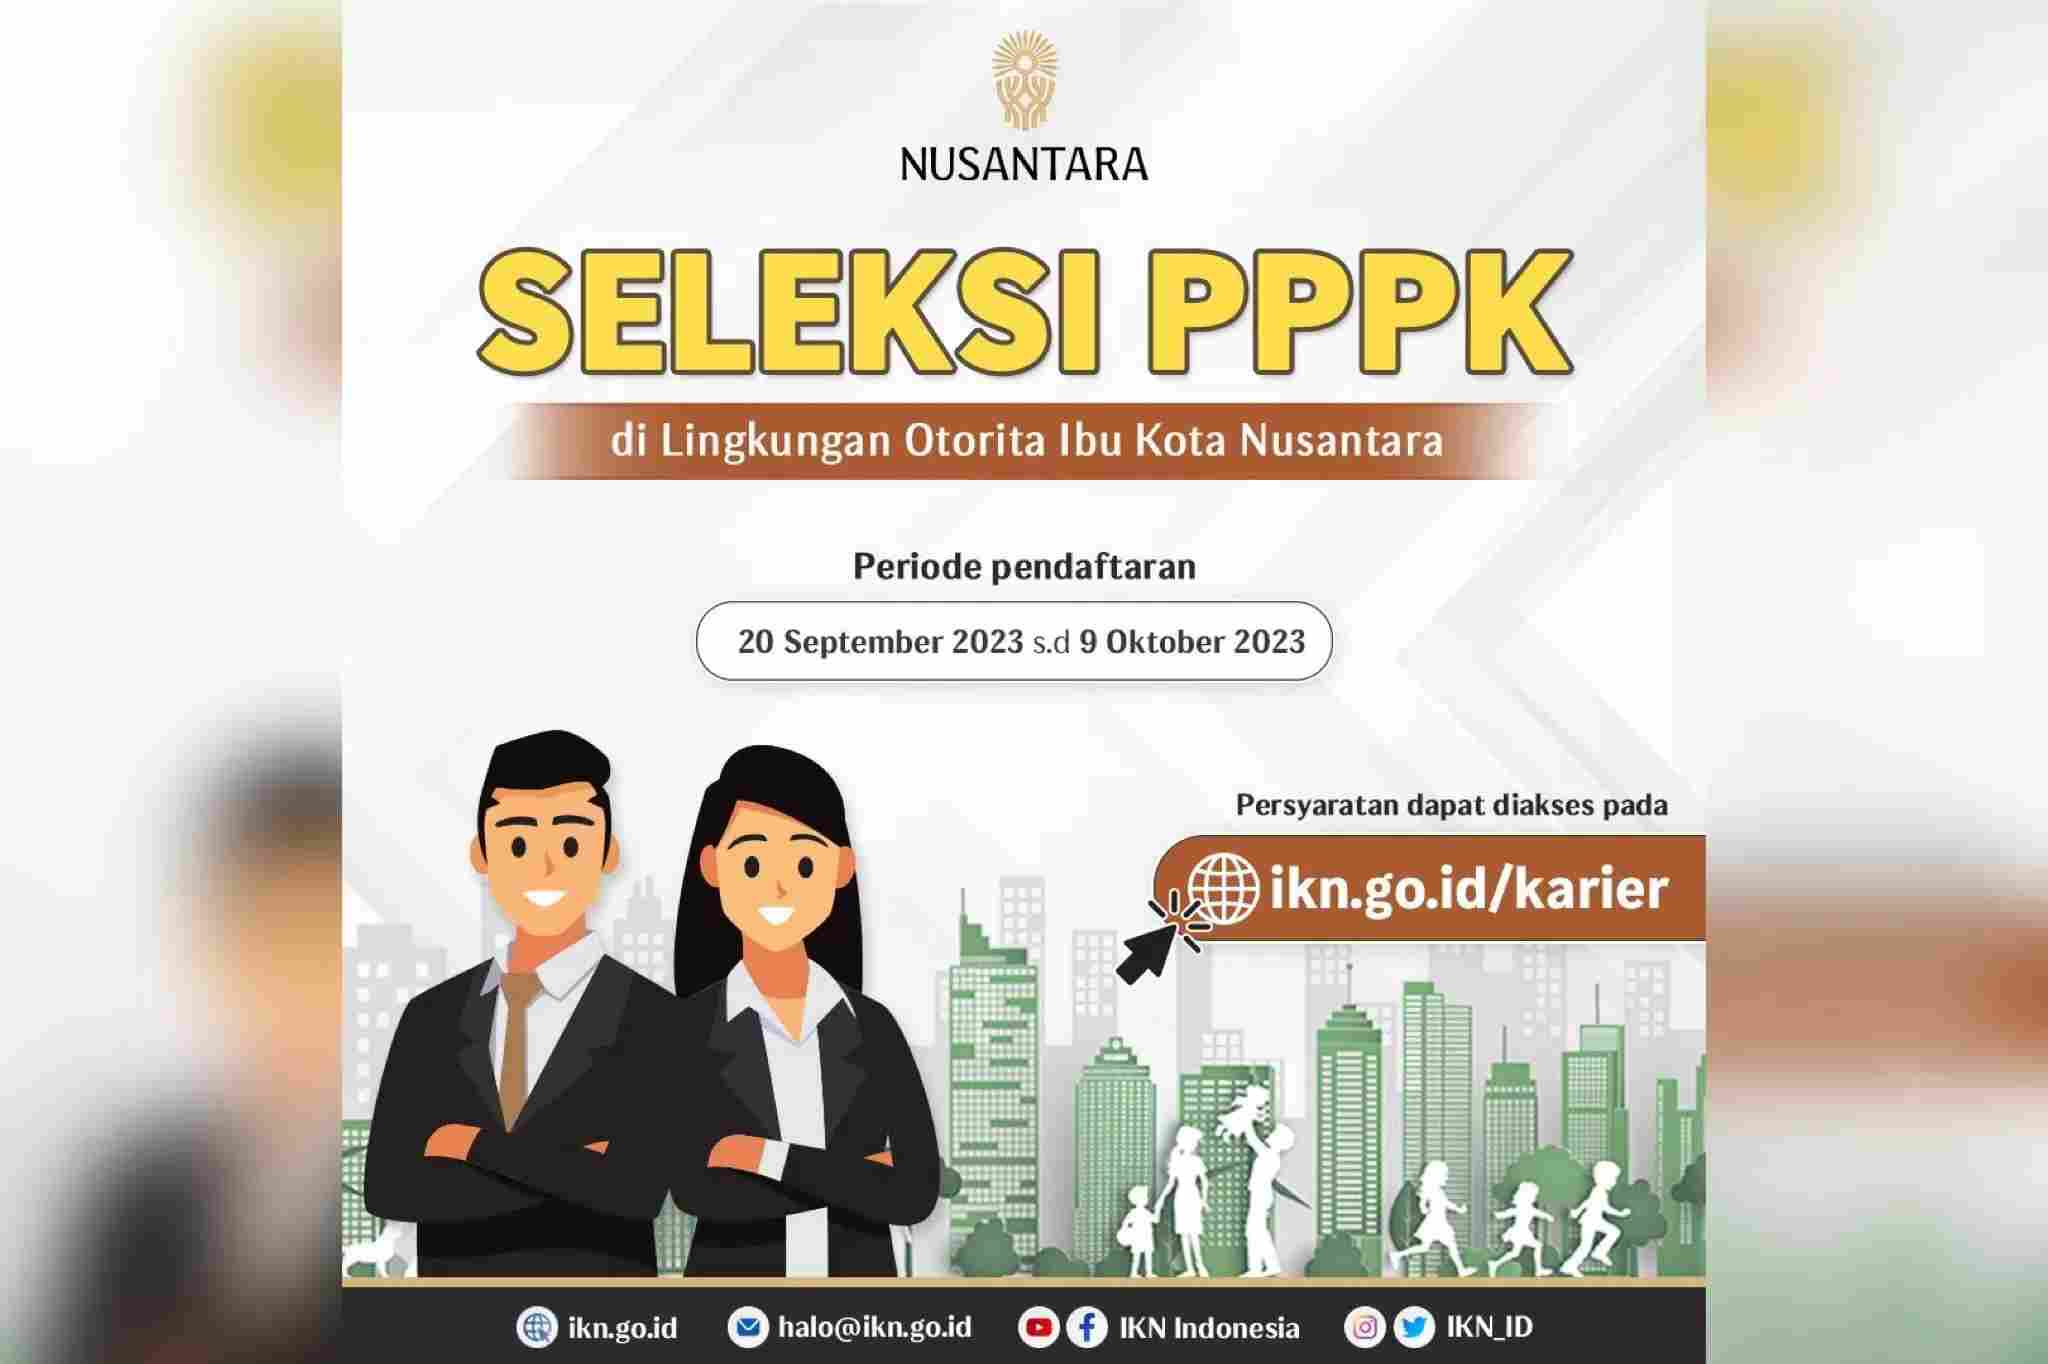 355 Formasi PPPK Penempatan Otorita Ibu Kota Nusantara Dibuka, Cek Persyaratan Pelamar Lengkap dan Kualifikasi